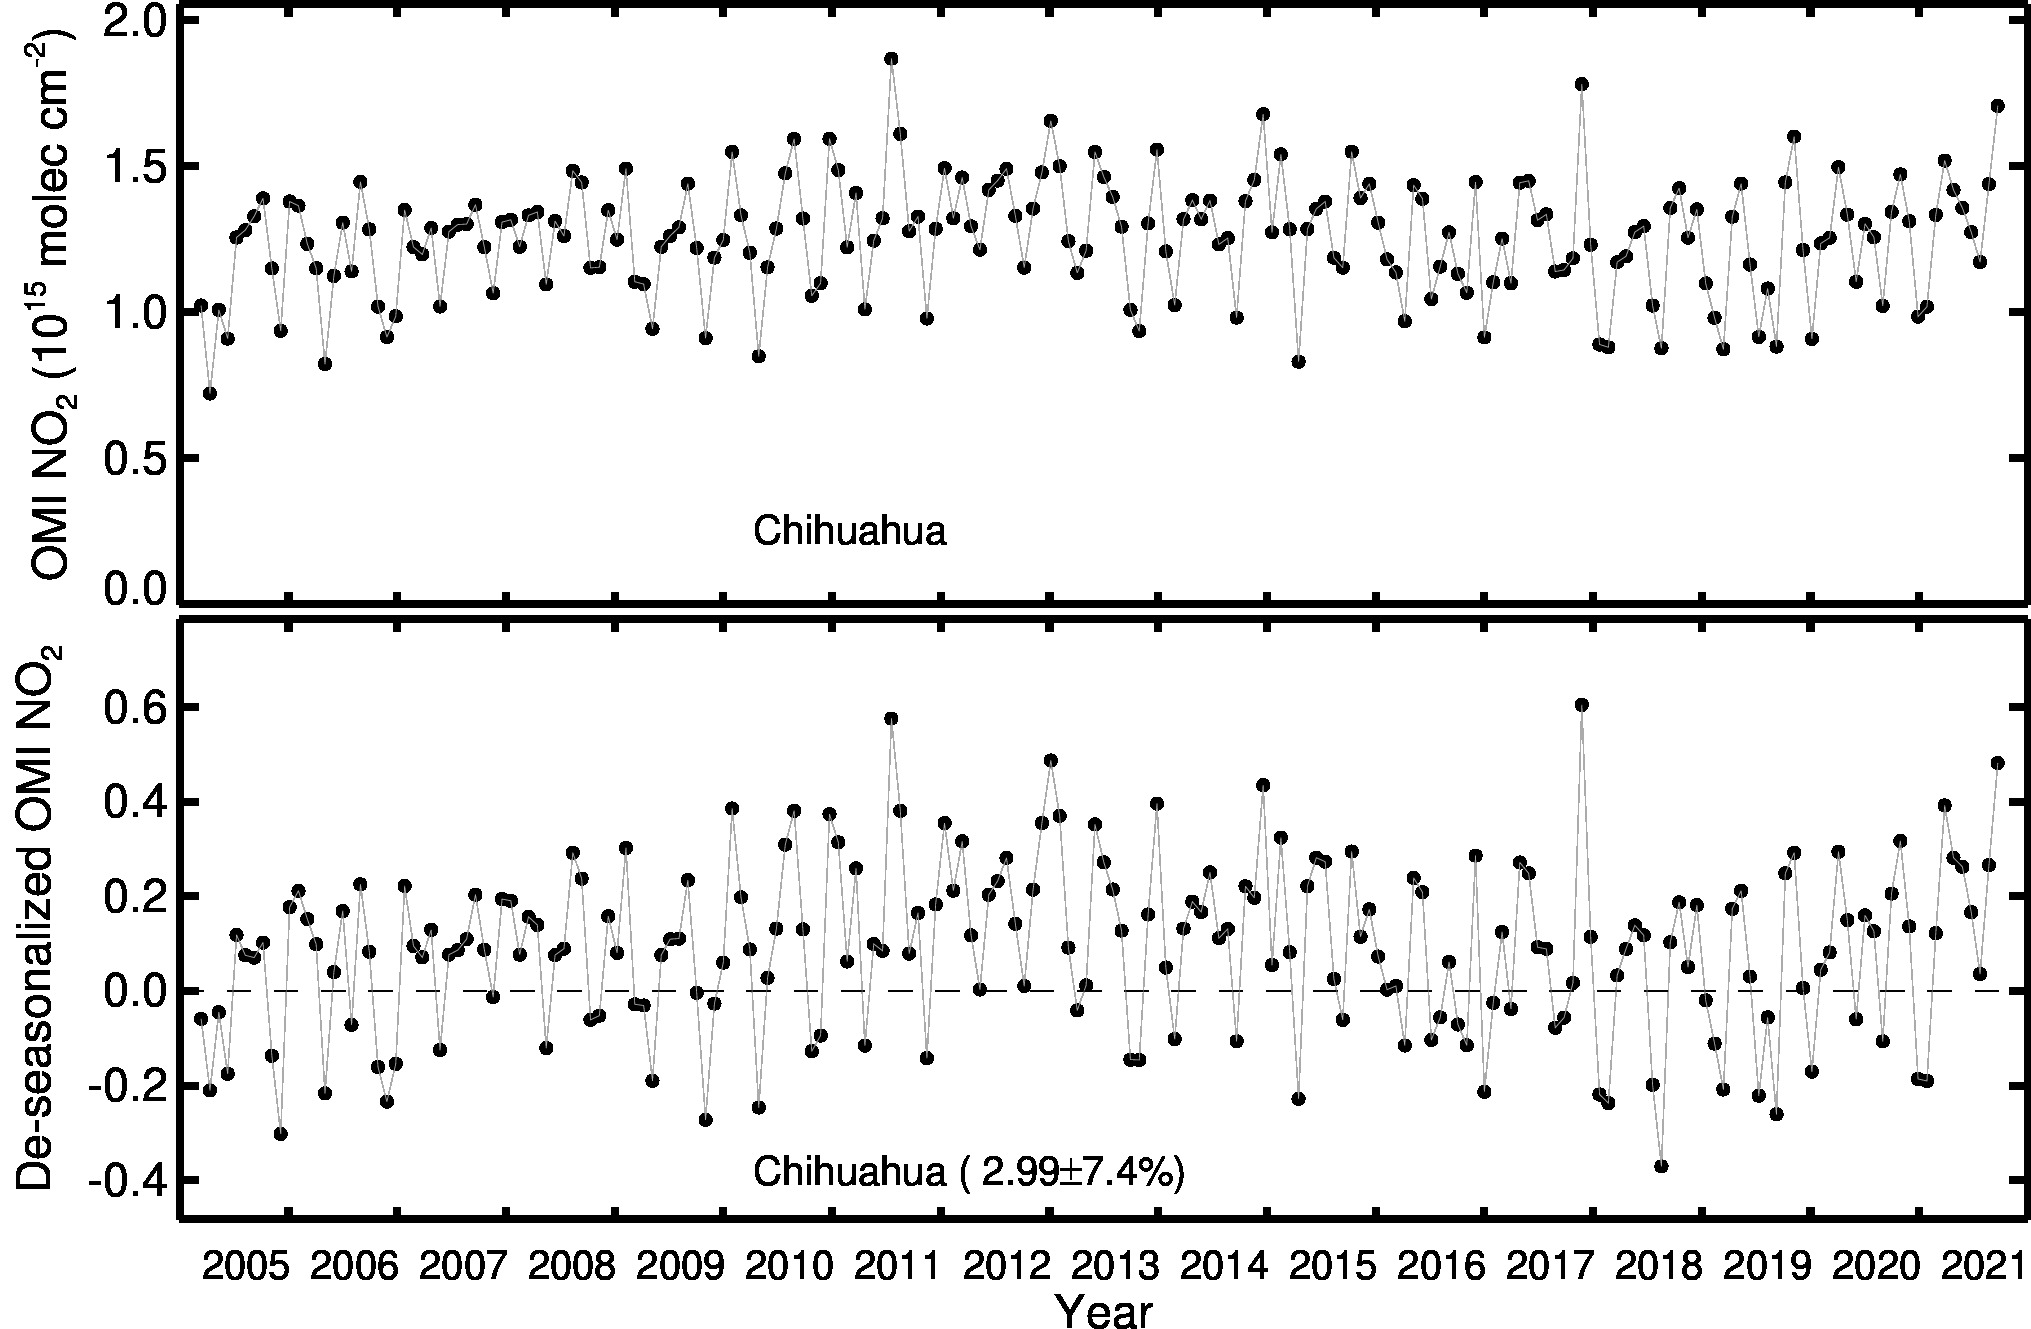 Chihuahua Line Plot 2005-2021